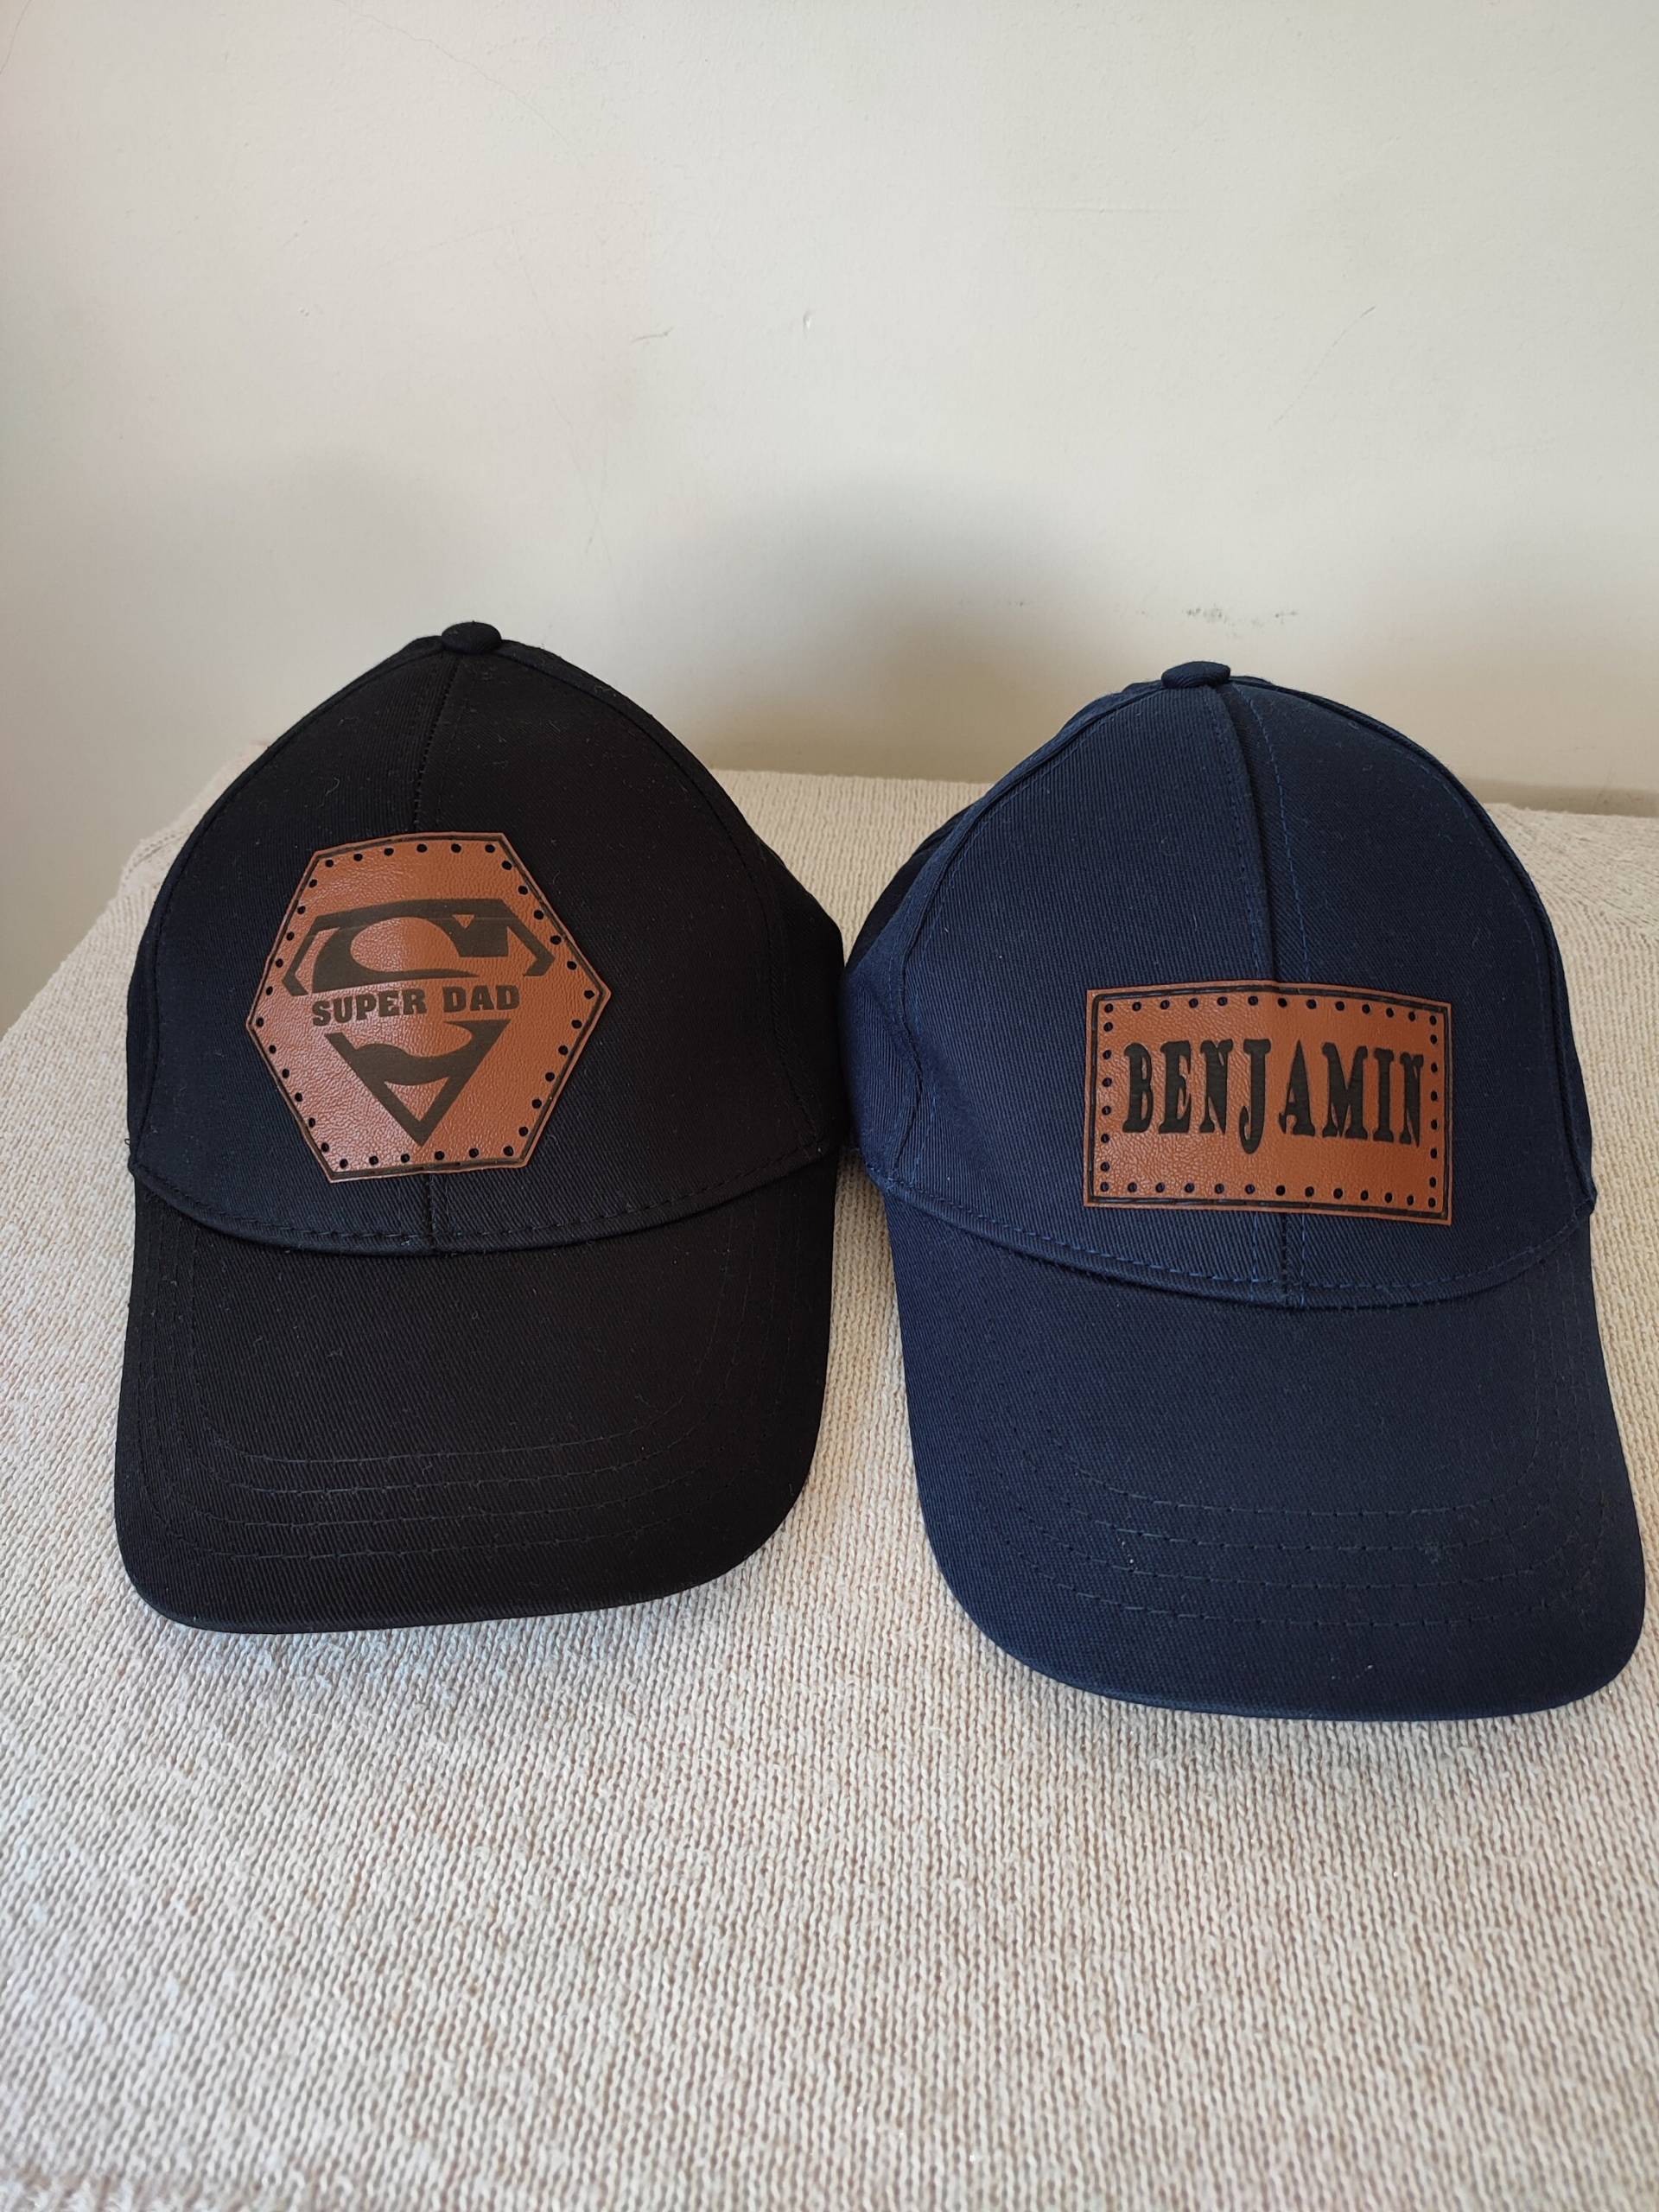 Opa Vatertag Geschenk, Leder Patch Trucker Hut, Bestes Geschenk Für Opa, Richardson 112 Snapback Neuer von BestArtShop1